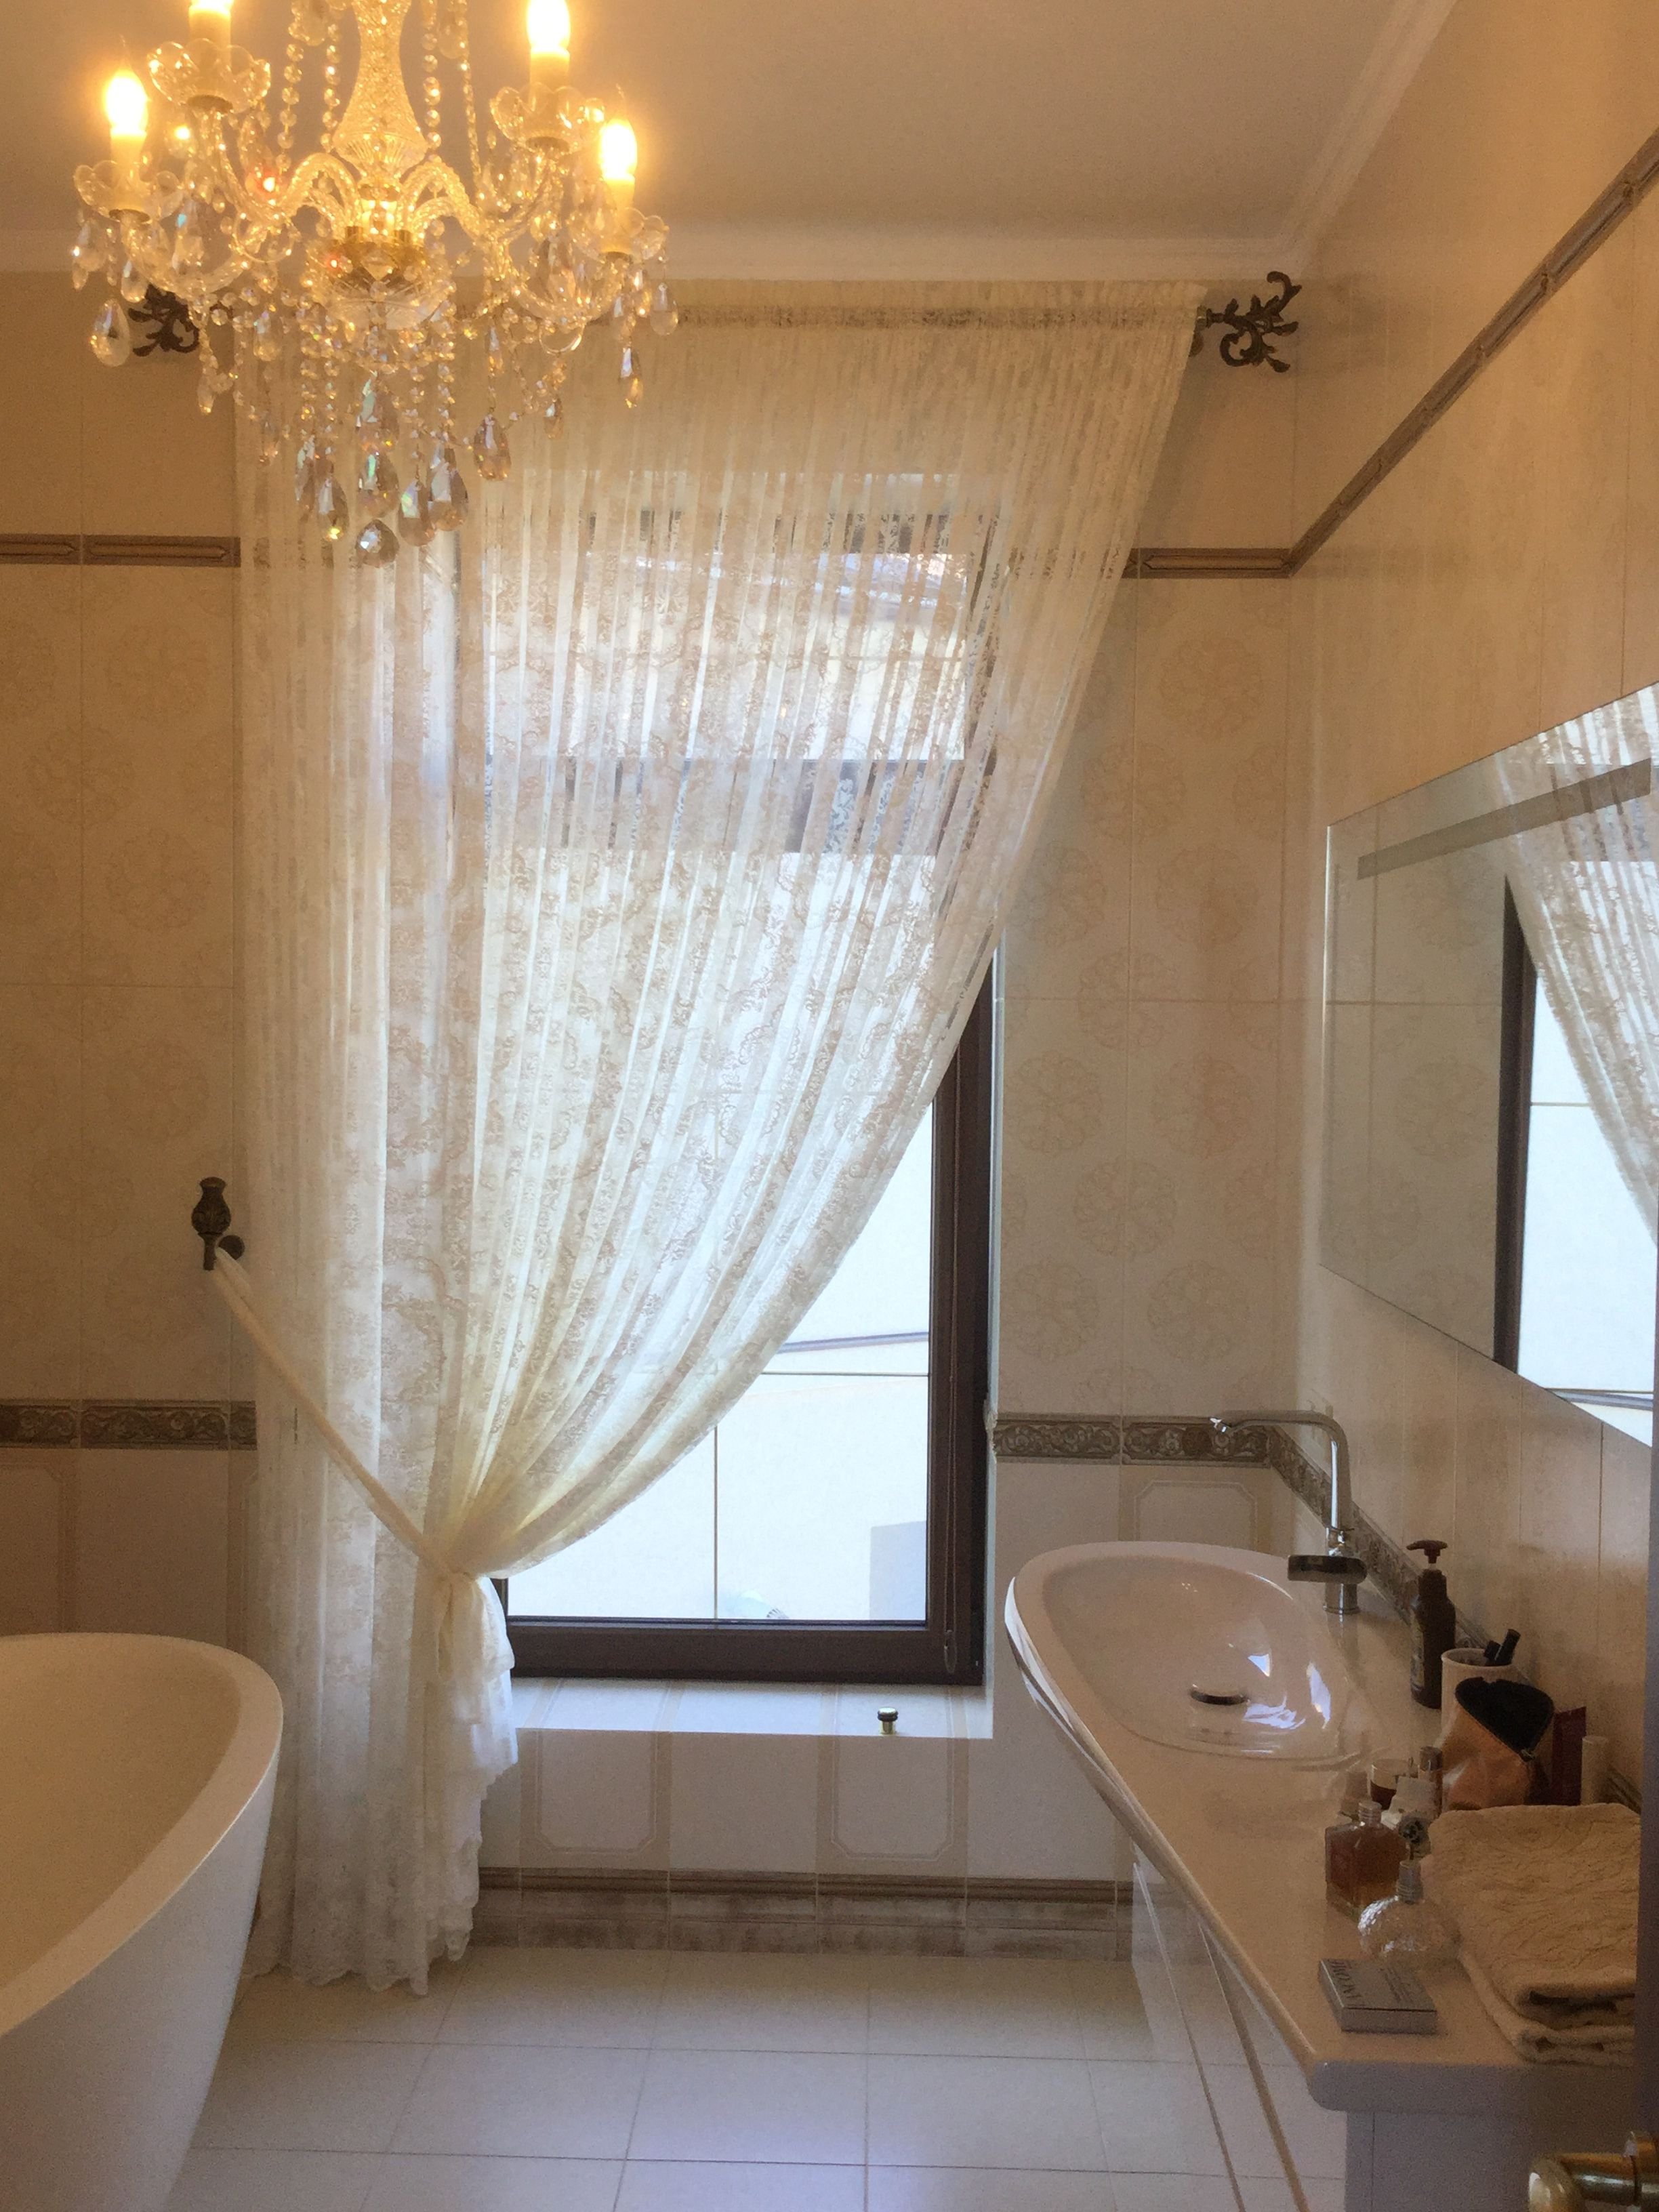 Ванная комната – как оформить окно? | Ажур